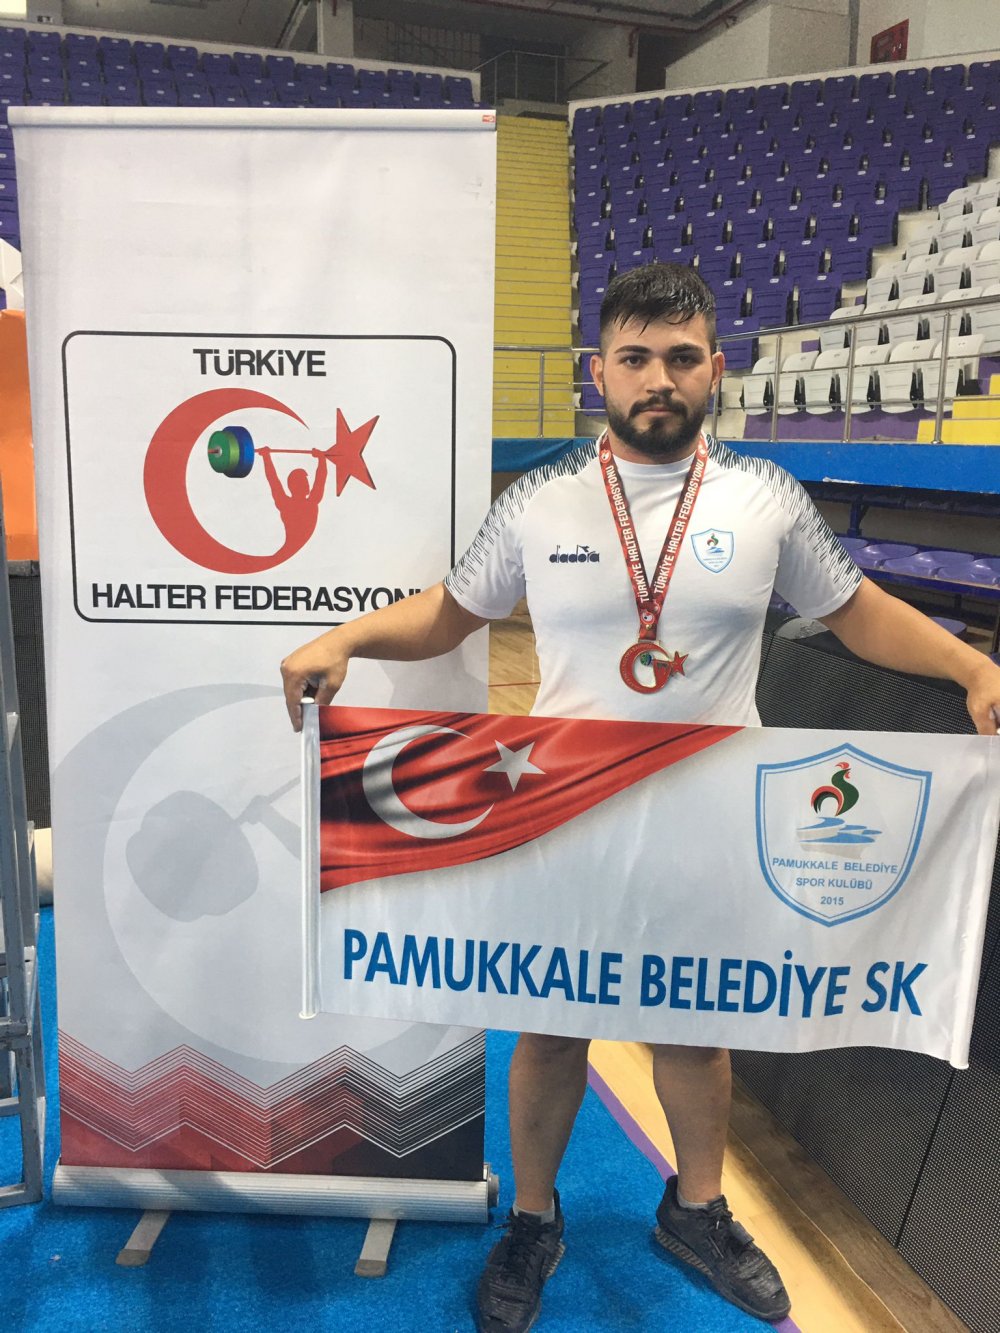 Pamukkale Belediyespor’un rekortmen haltercisi Mehmet Avcıl,  U 23 Halter Milli Takımı’na davet edildi. Başarılı sporcu Gaziantep’deki kampta Finlandiya’daki Avrupa Şampiyonası’na hazırlanacak.